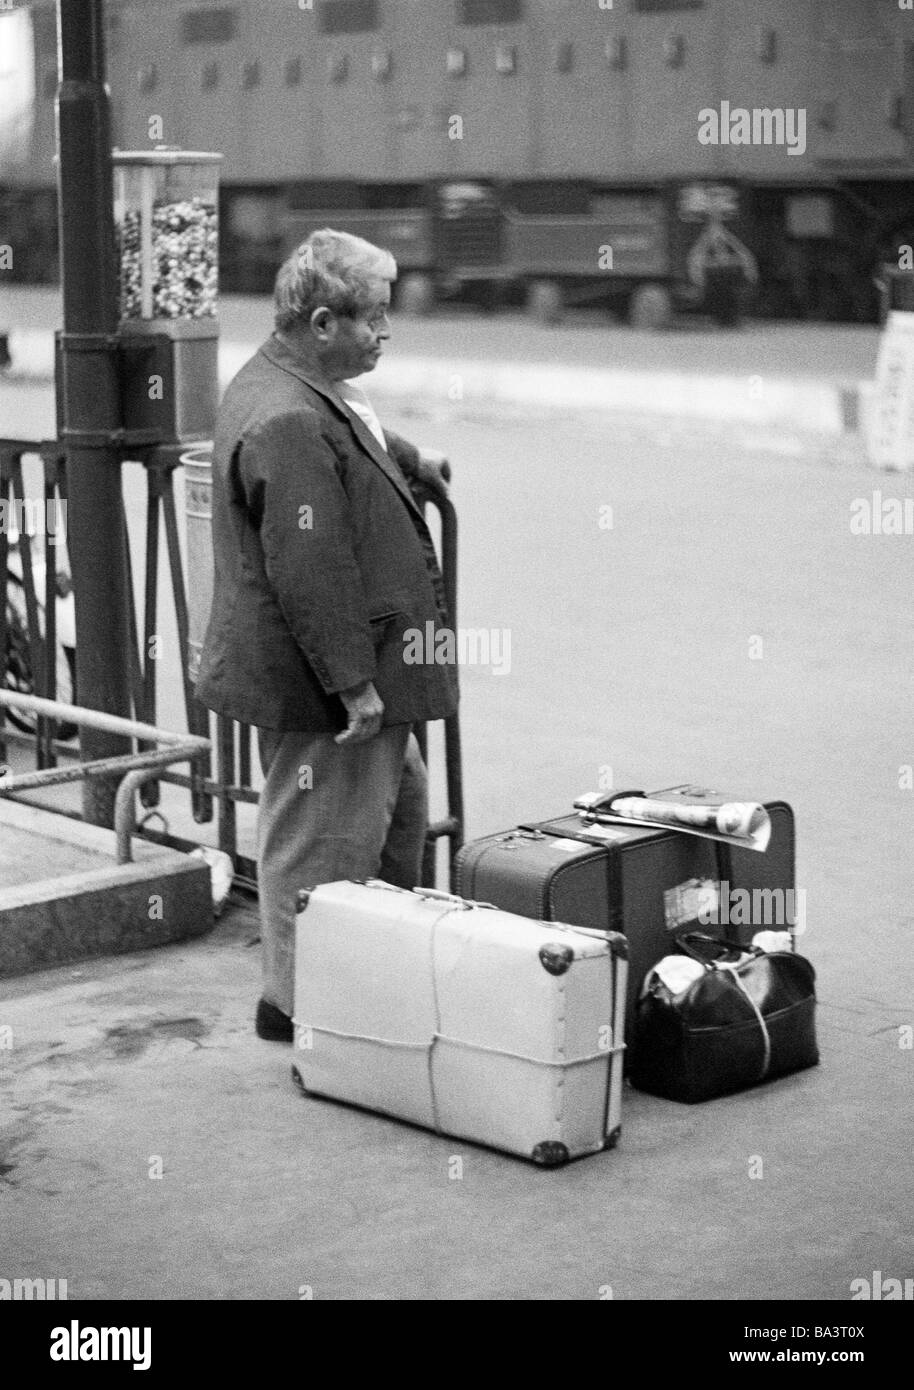 Negli anni settanta, foto in bianco e nero, persone, uomo vecchio sorge su una piattaforma, stazione ferroviaria, valigie, bagagli, di età compresa tra 60 a 70 anni, l'Italia, Lombardia, Milano Foto Stock